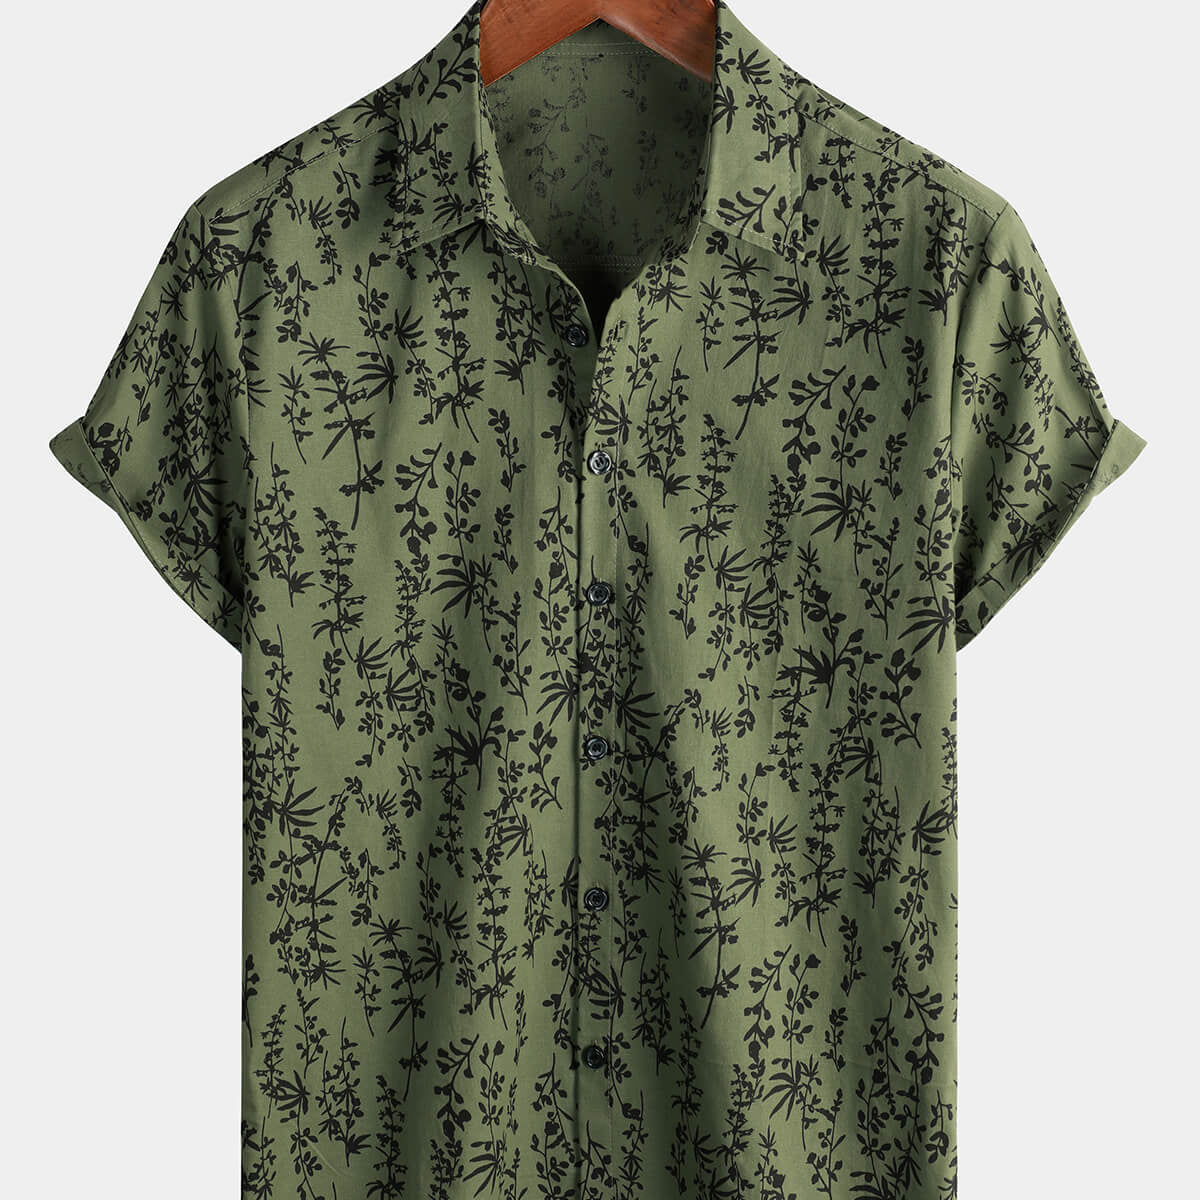 Camisa de manga corta con botones para hombre, color verde, algodón, hawaiano, verano, vintage, floral, vacaciones, crucero